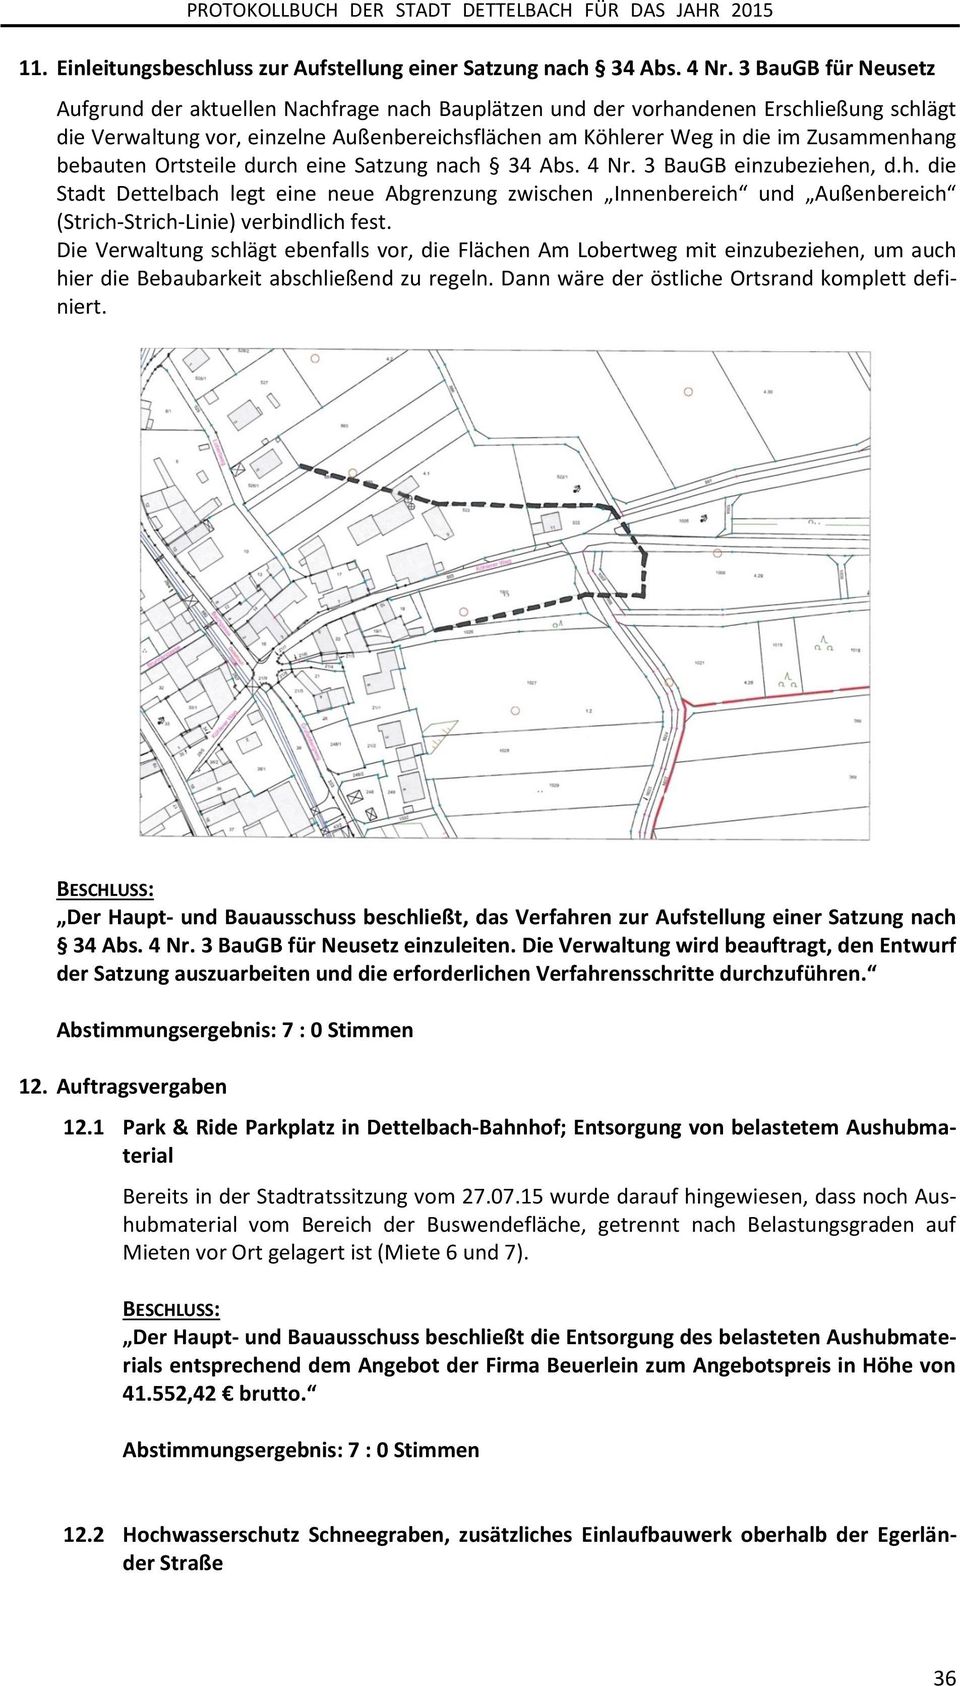 bebauten Ortsteile durch eine Satzung nach 34 Abs. 4 Nr. 3 BauGB einzubeziehen, d.h. die Stadt Dettelbach legt eine neue Abgrenzung zwischen Innenbereich und Außenbereich (Strich-Strich-Linie) verbindlich fest.